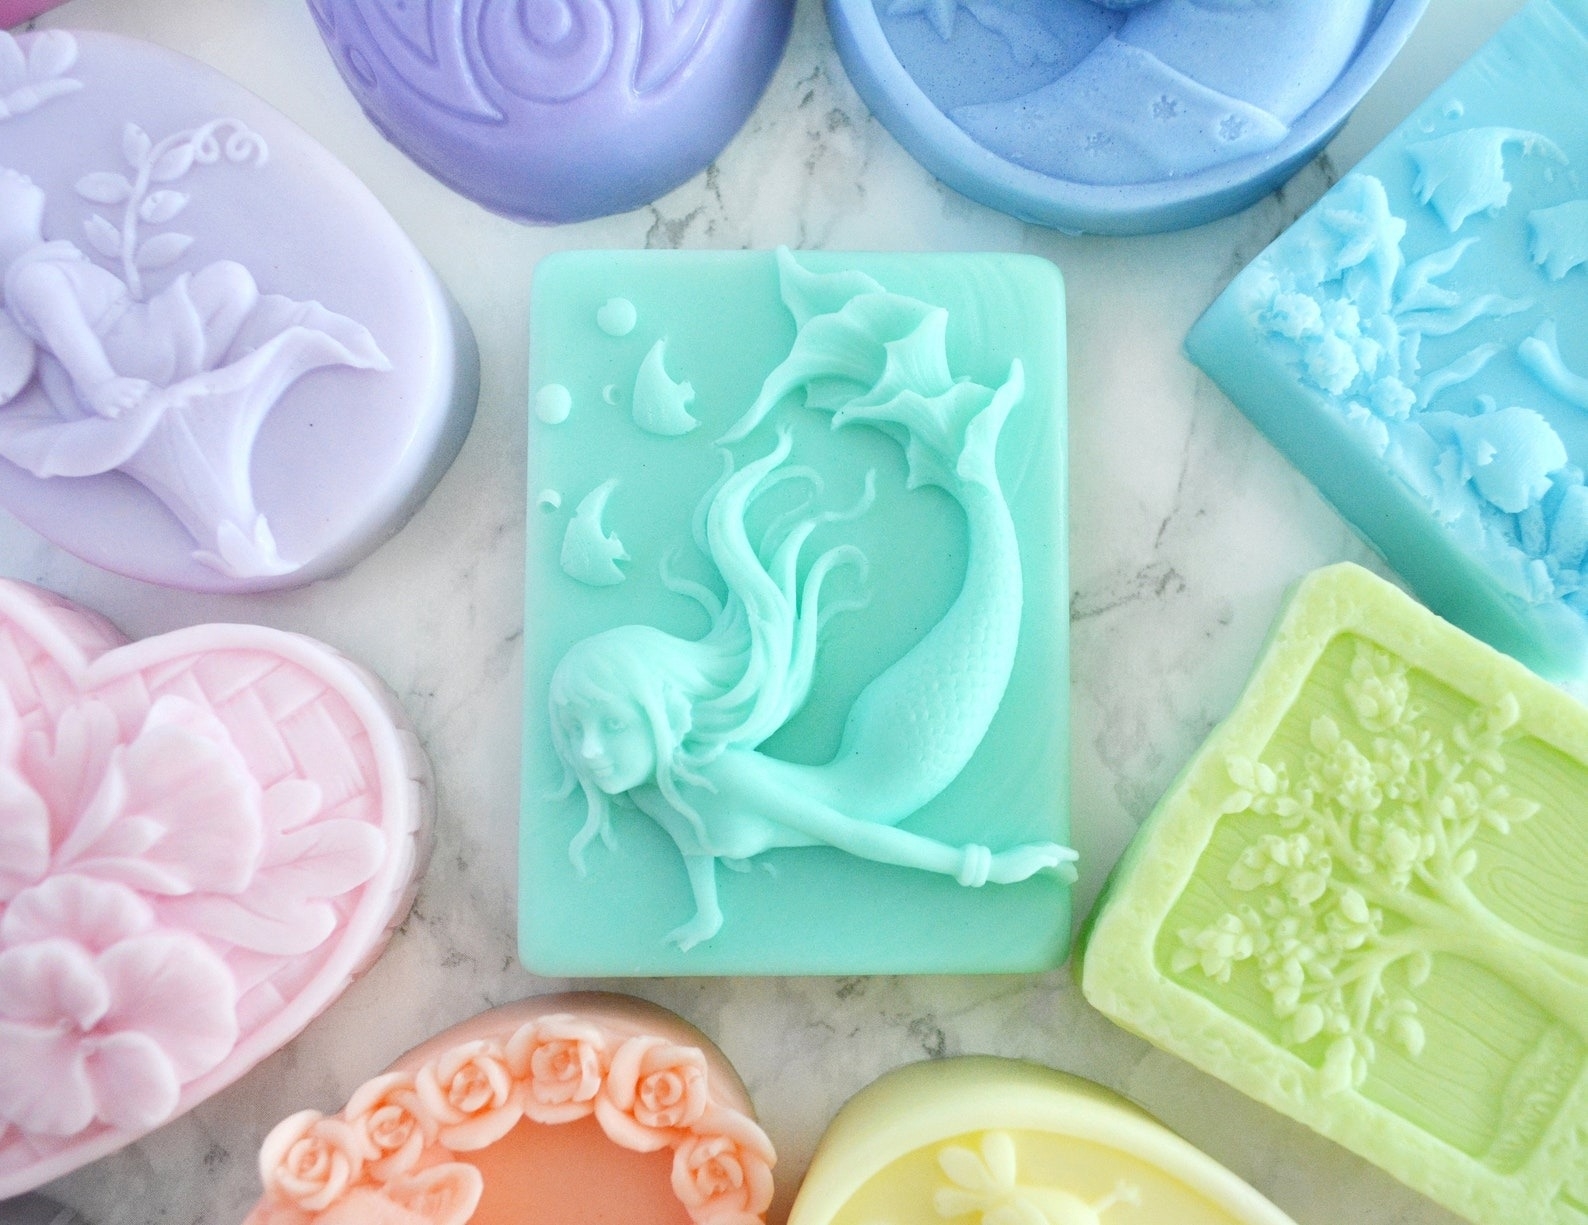 the teal mermaid soap